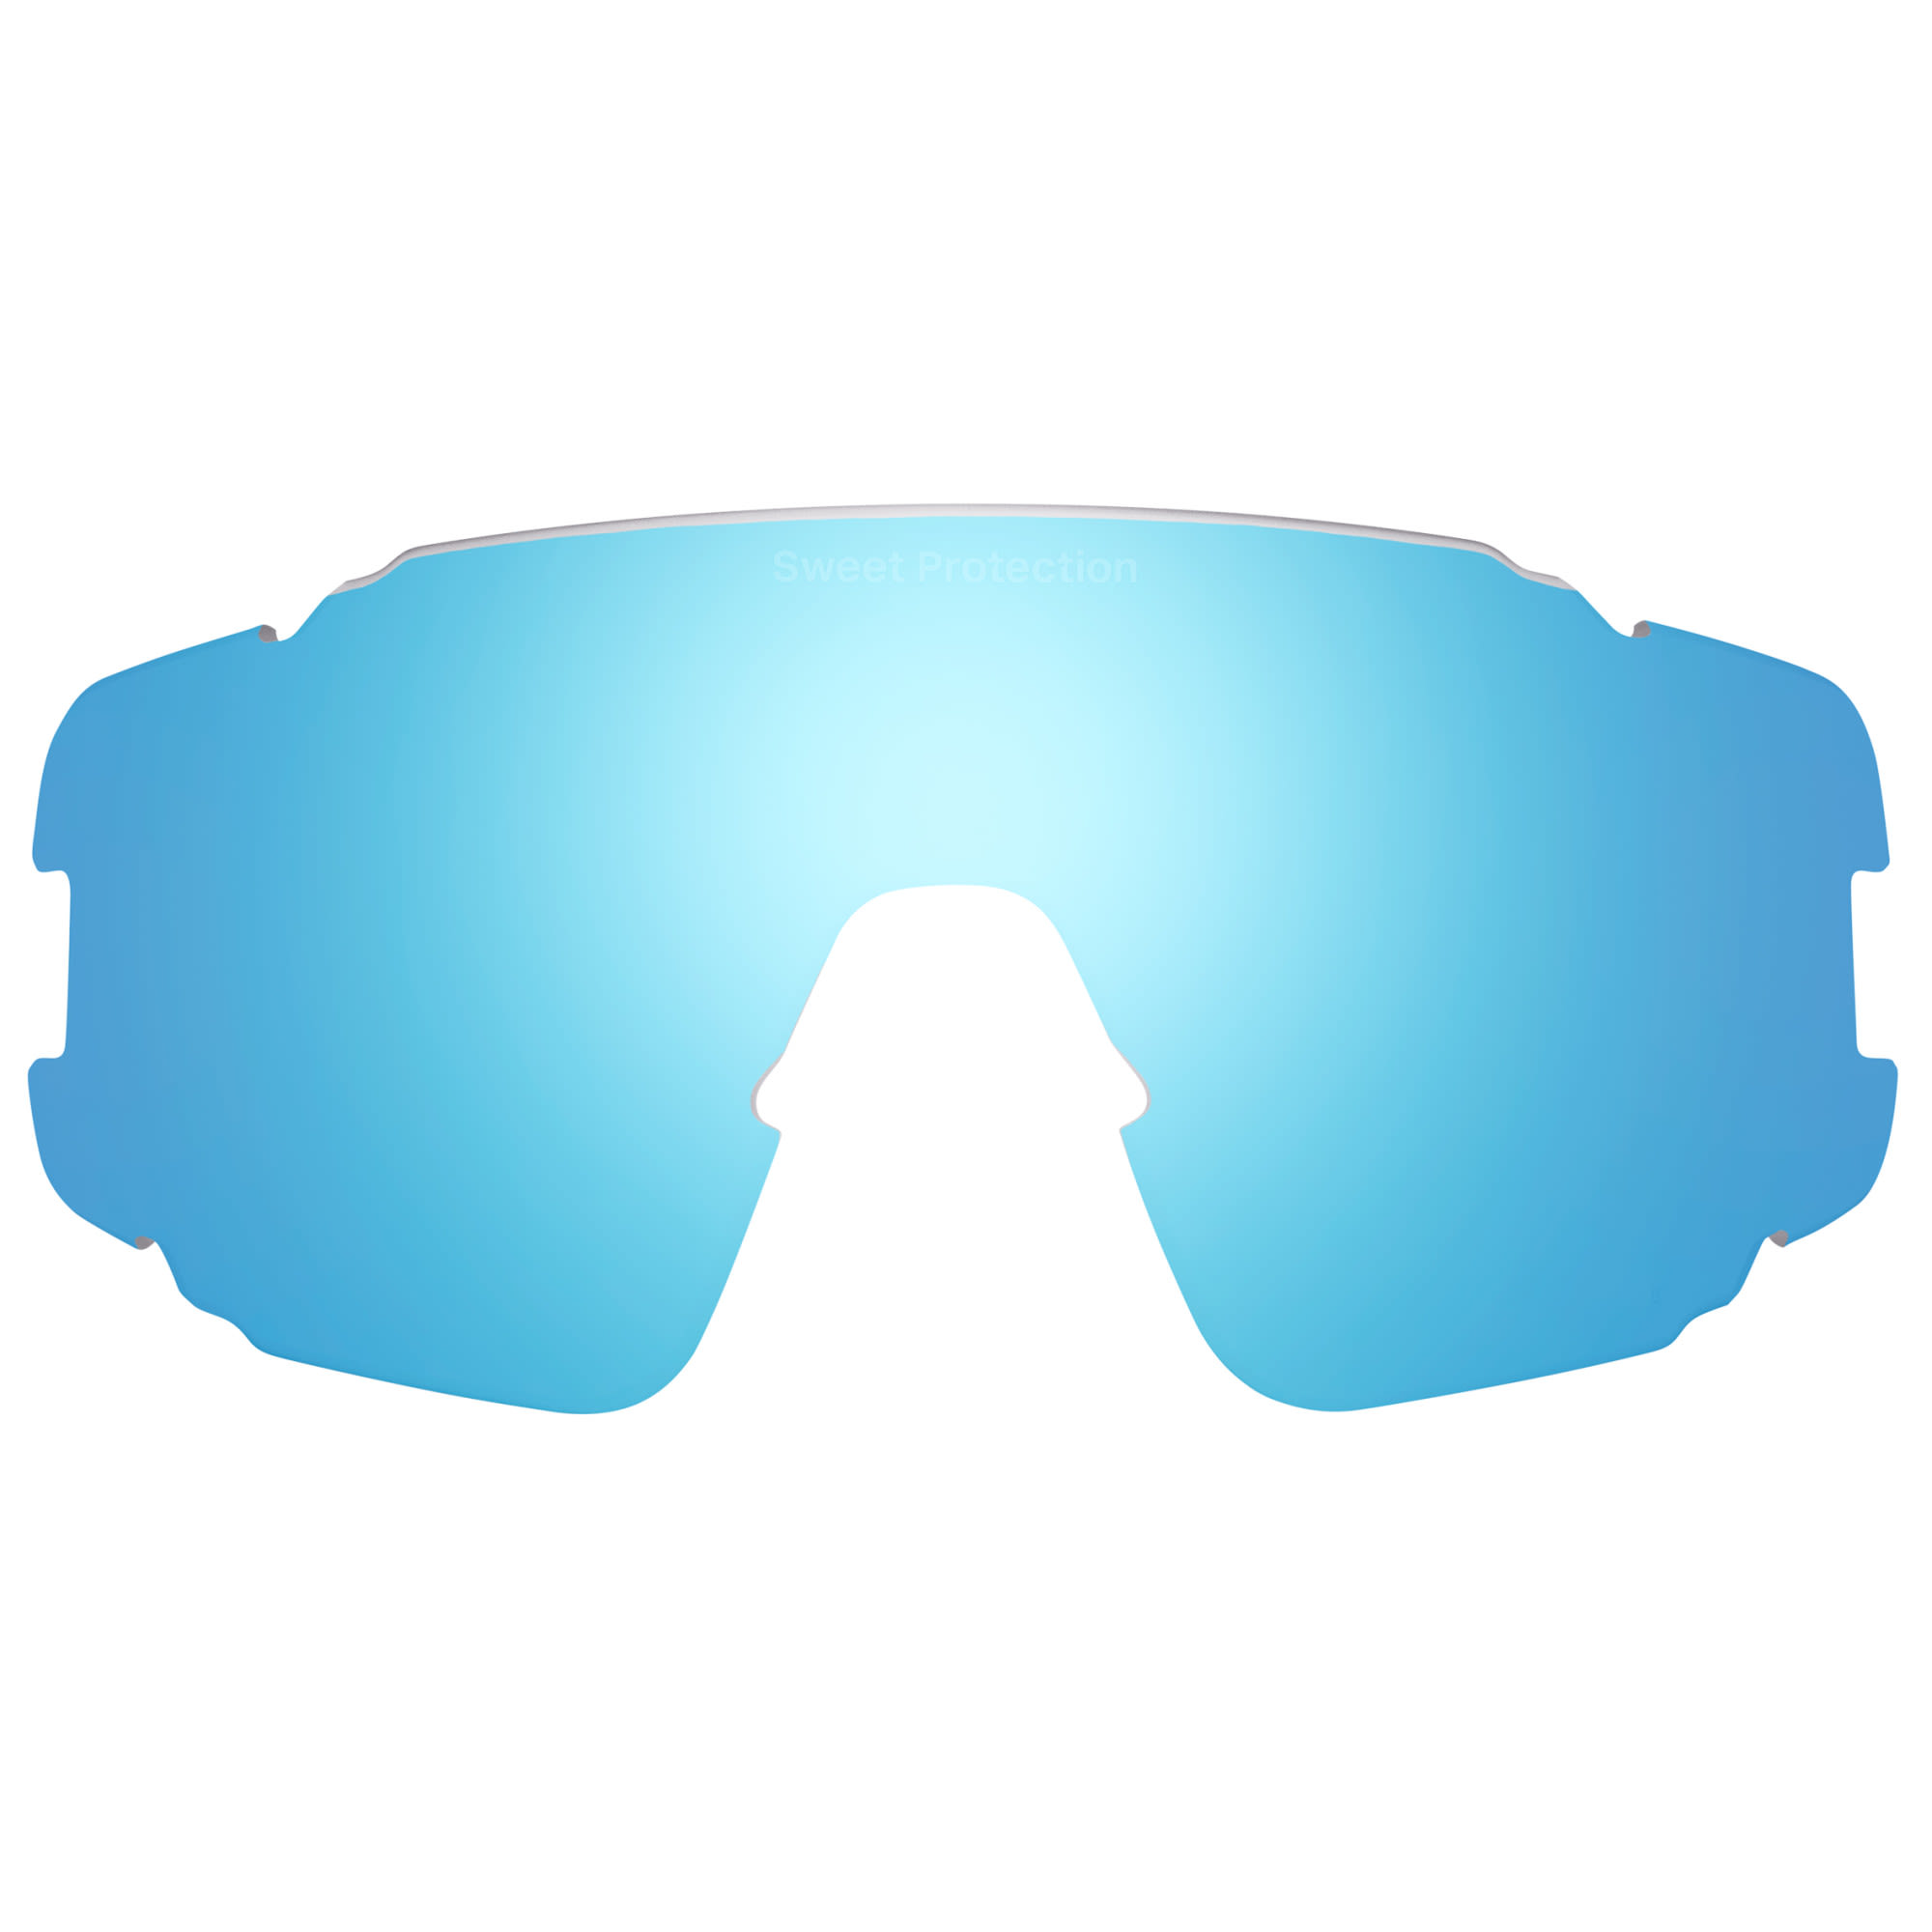 Sweet Protection Hochwertige Sportbrillen Ersatzscheibe RIG Aquamarine